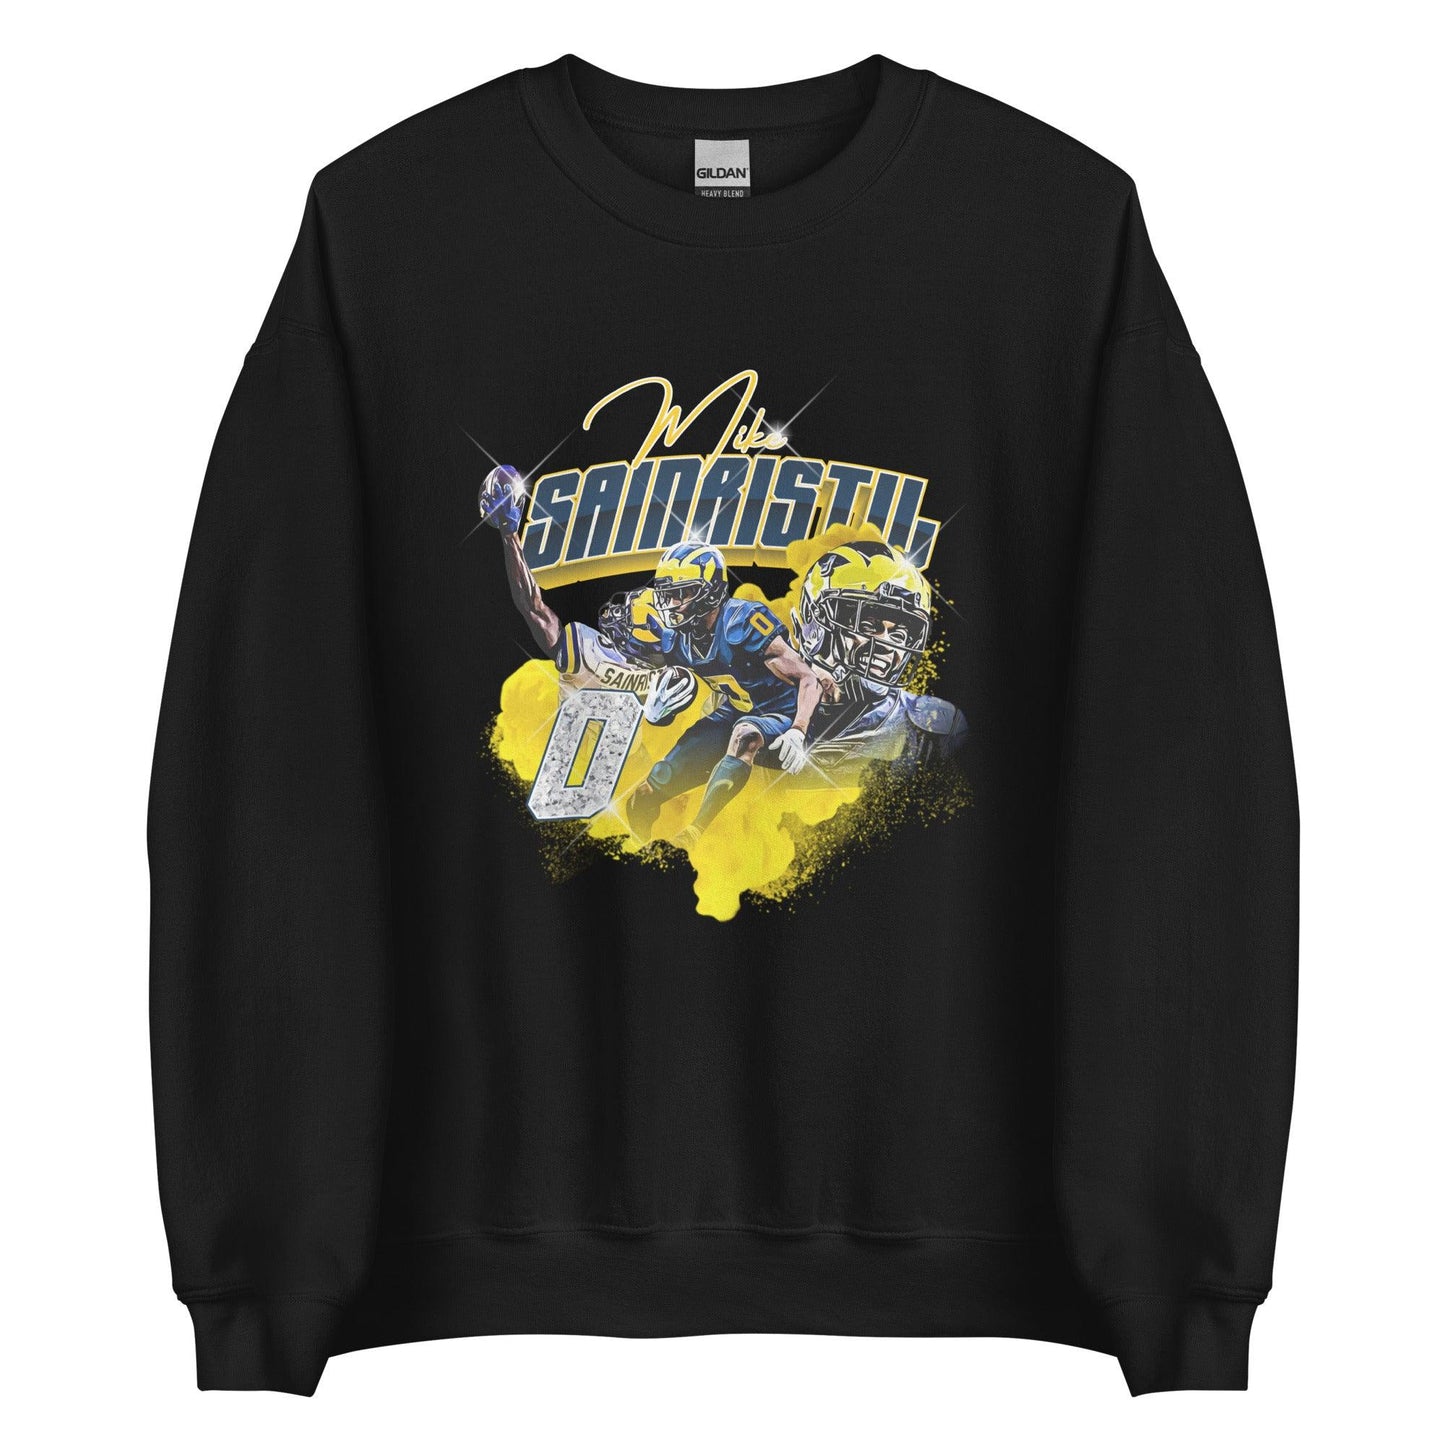 Mike Sainristil "Limited Edition" Sweatshirt - Fan Arch